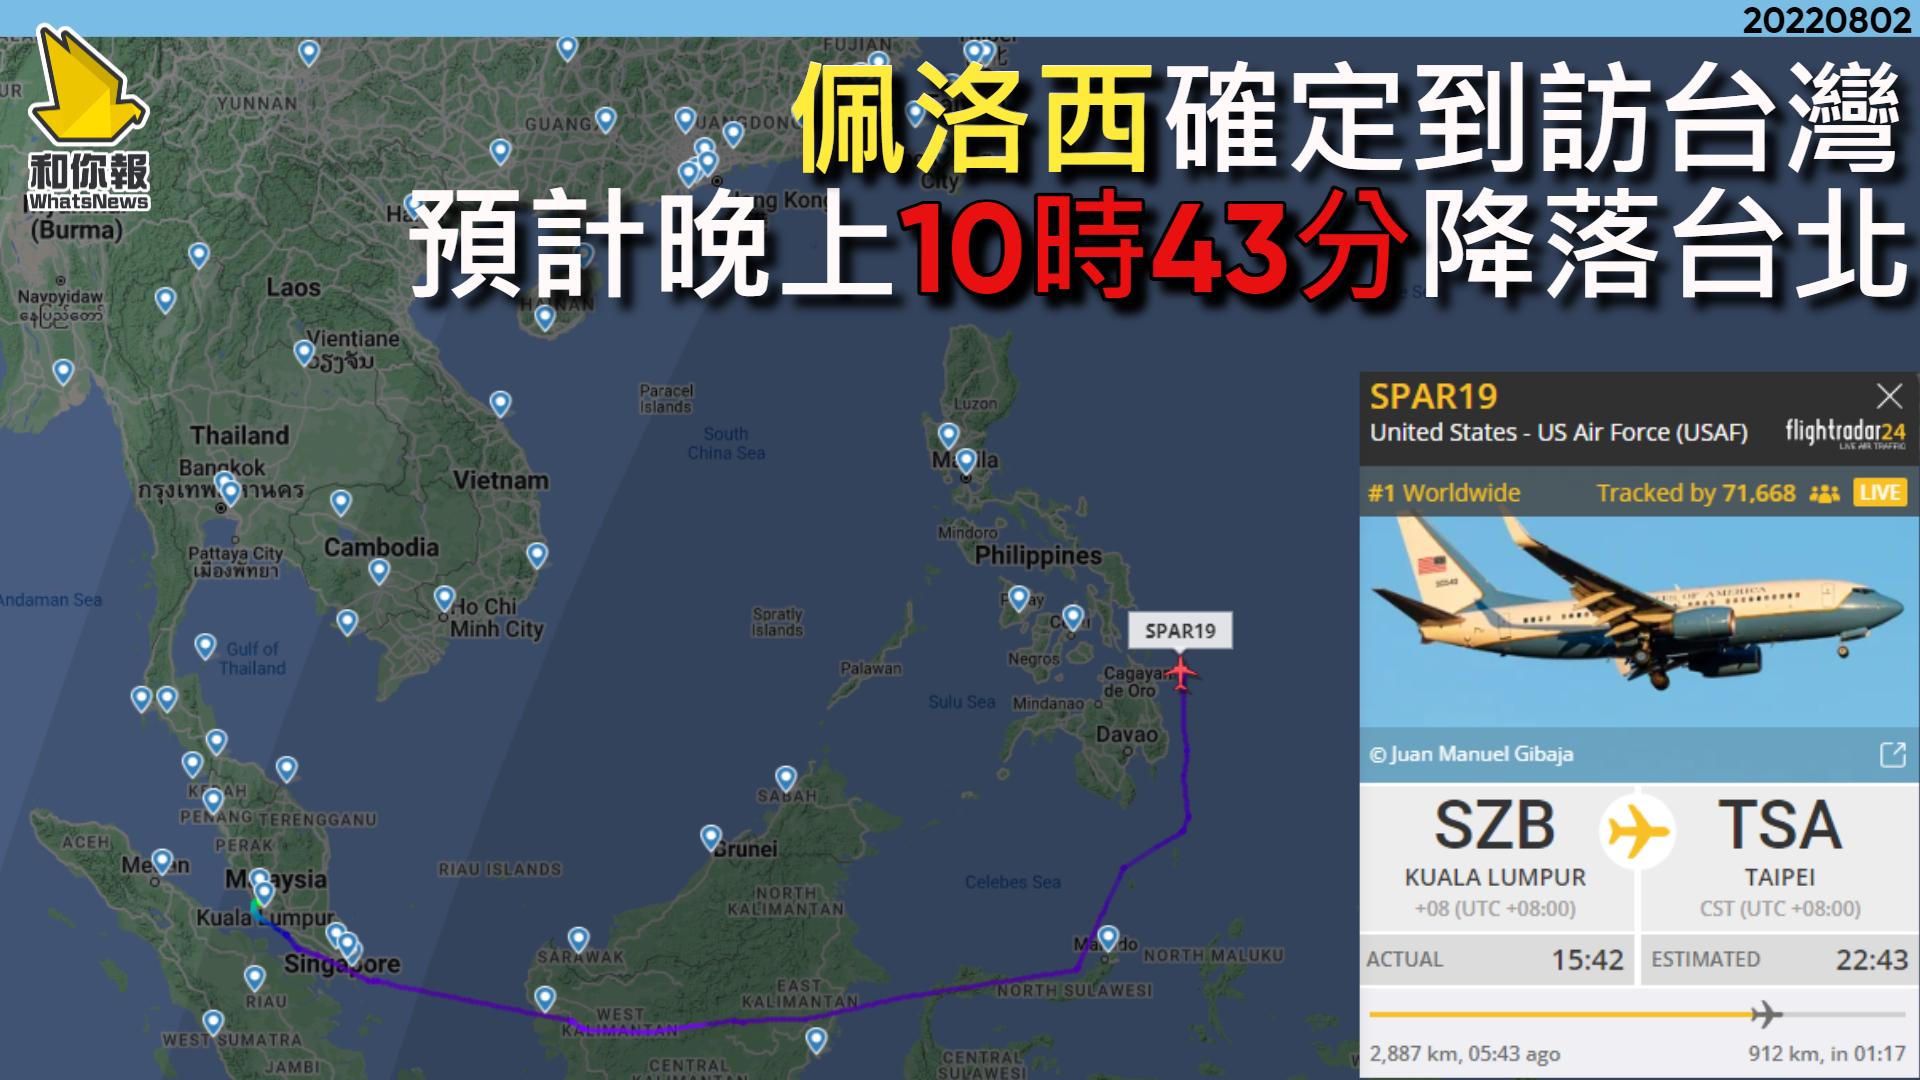 佩洛西確定到訪台灣　預計晚上10時43分降落台北